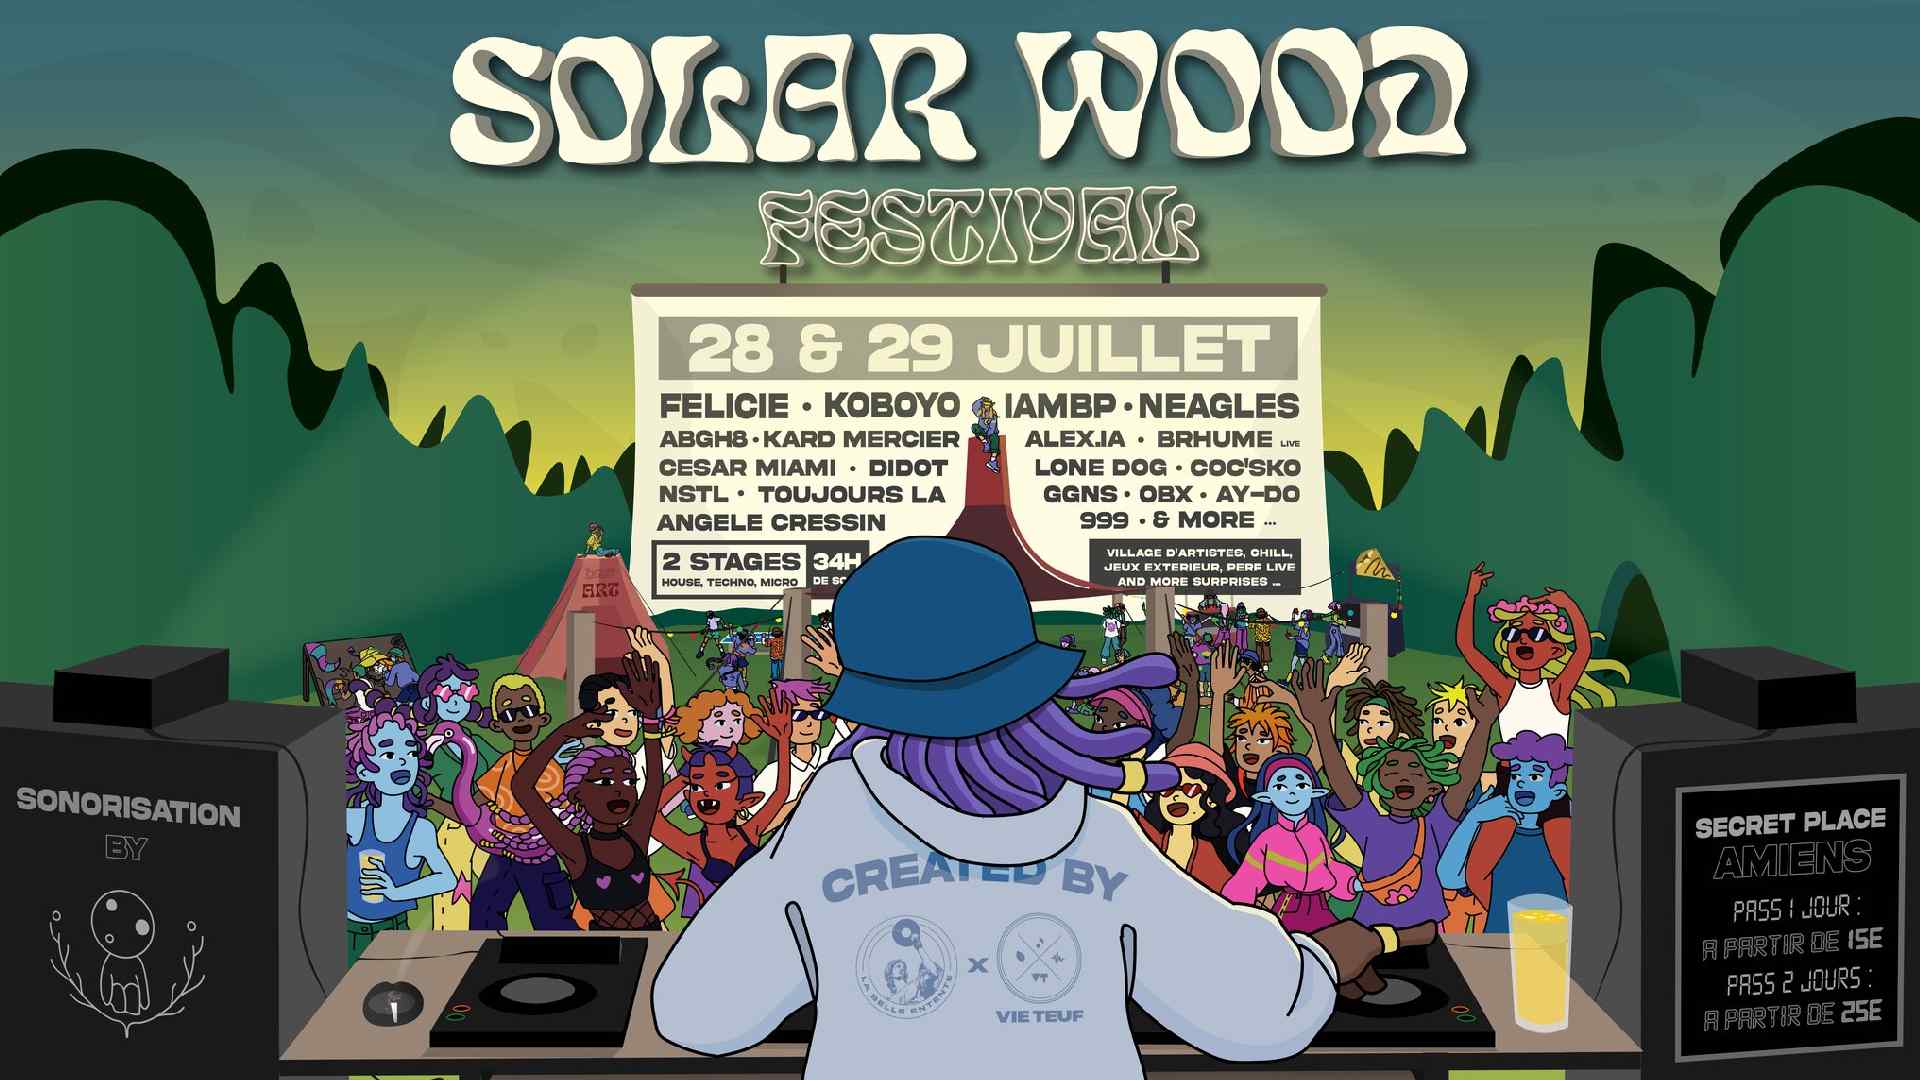 Affiche du Solar Wood Festival